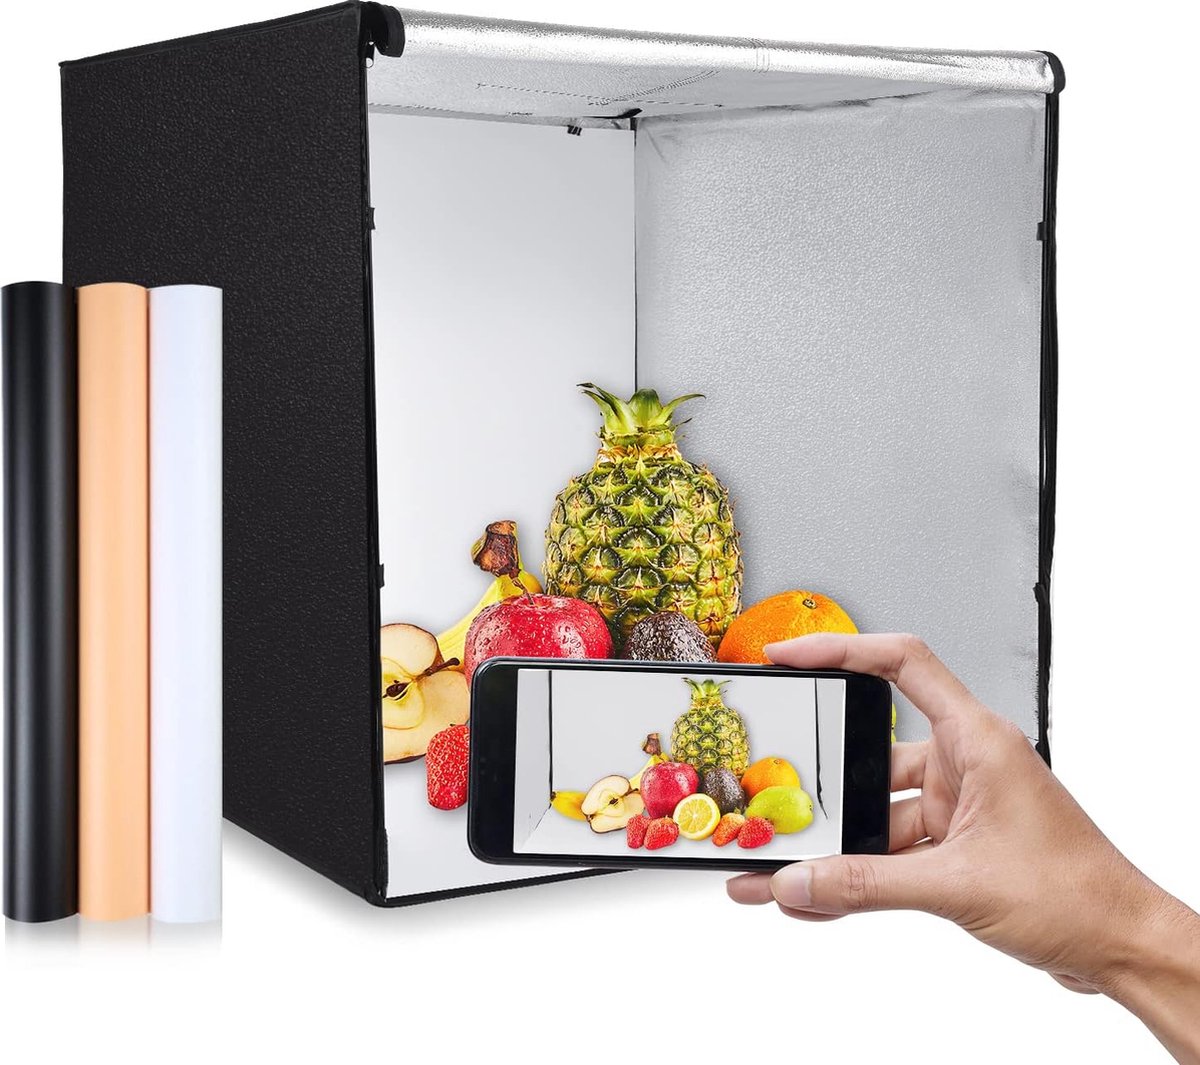 Opvouwbare LED Desktop Fotostudio Box met Drie Achtergronden voor Productfotografie - Draagbare Inklapbare Fotostudio met Krachtige LED-verlichting